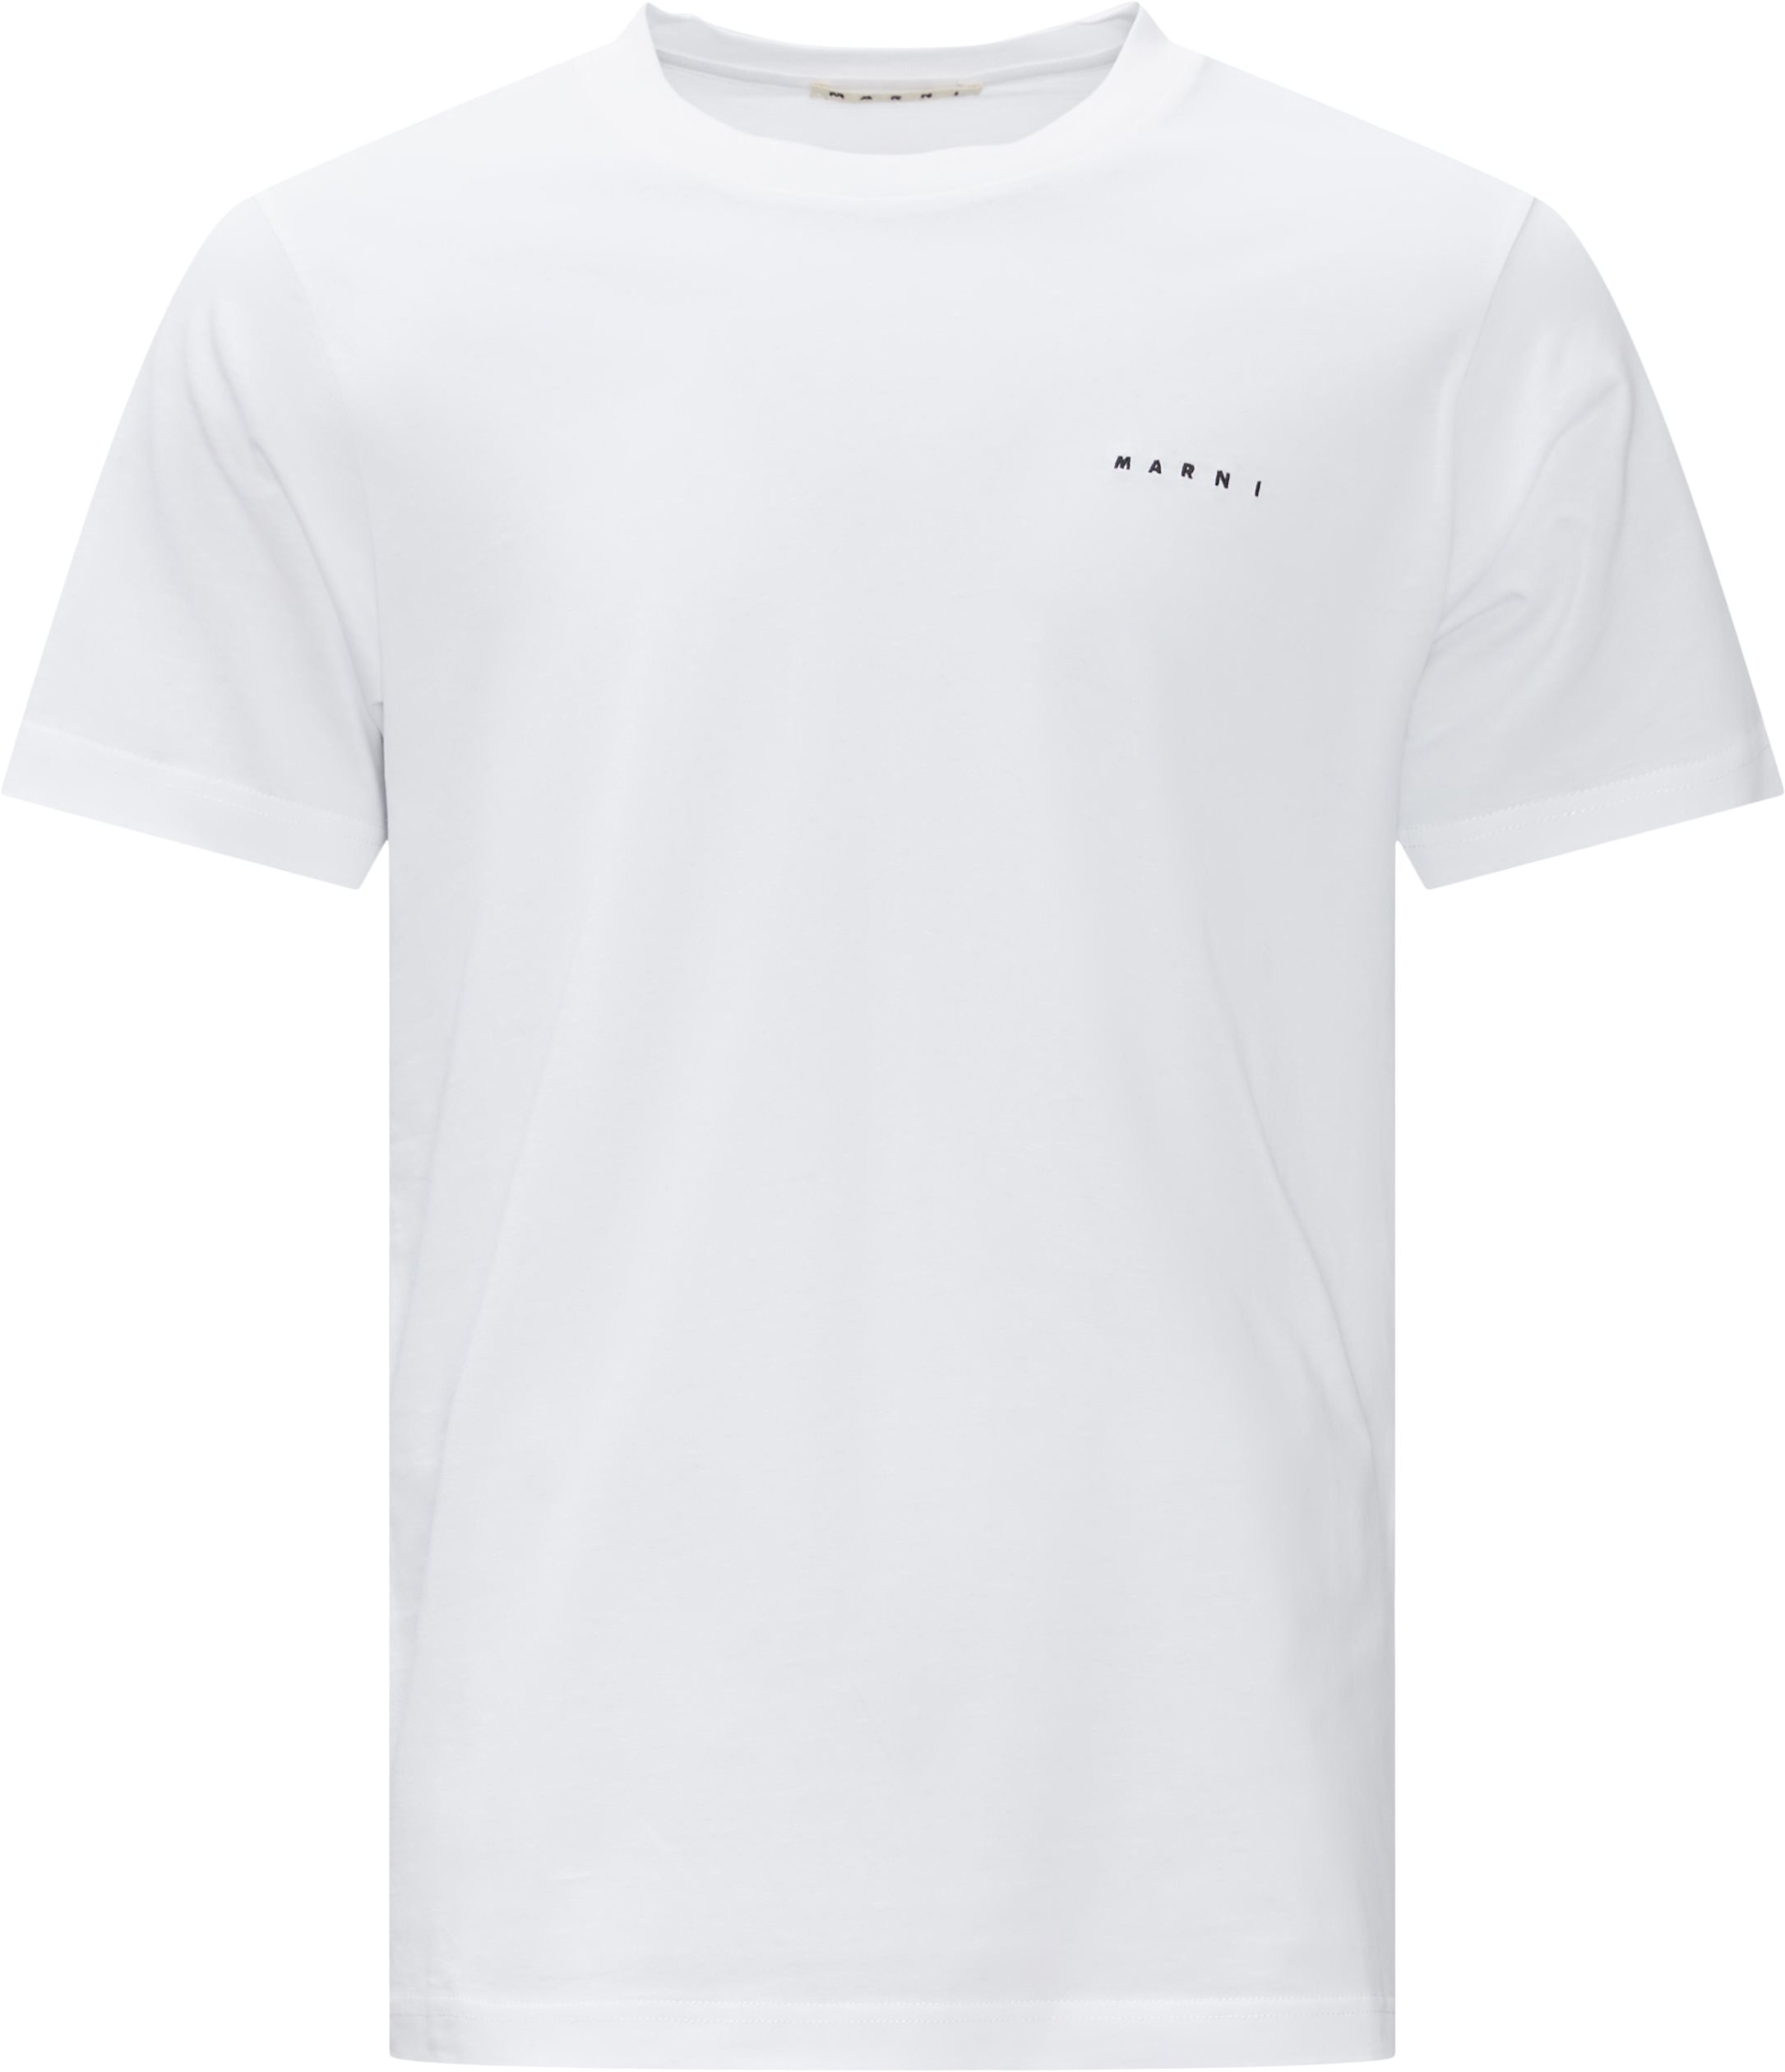 Logo Tee - T-shirts - Regular fit - Hvid